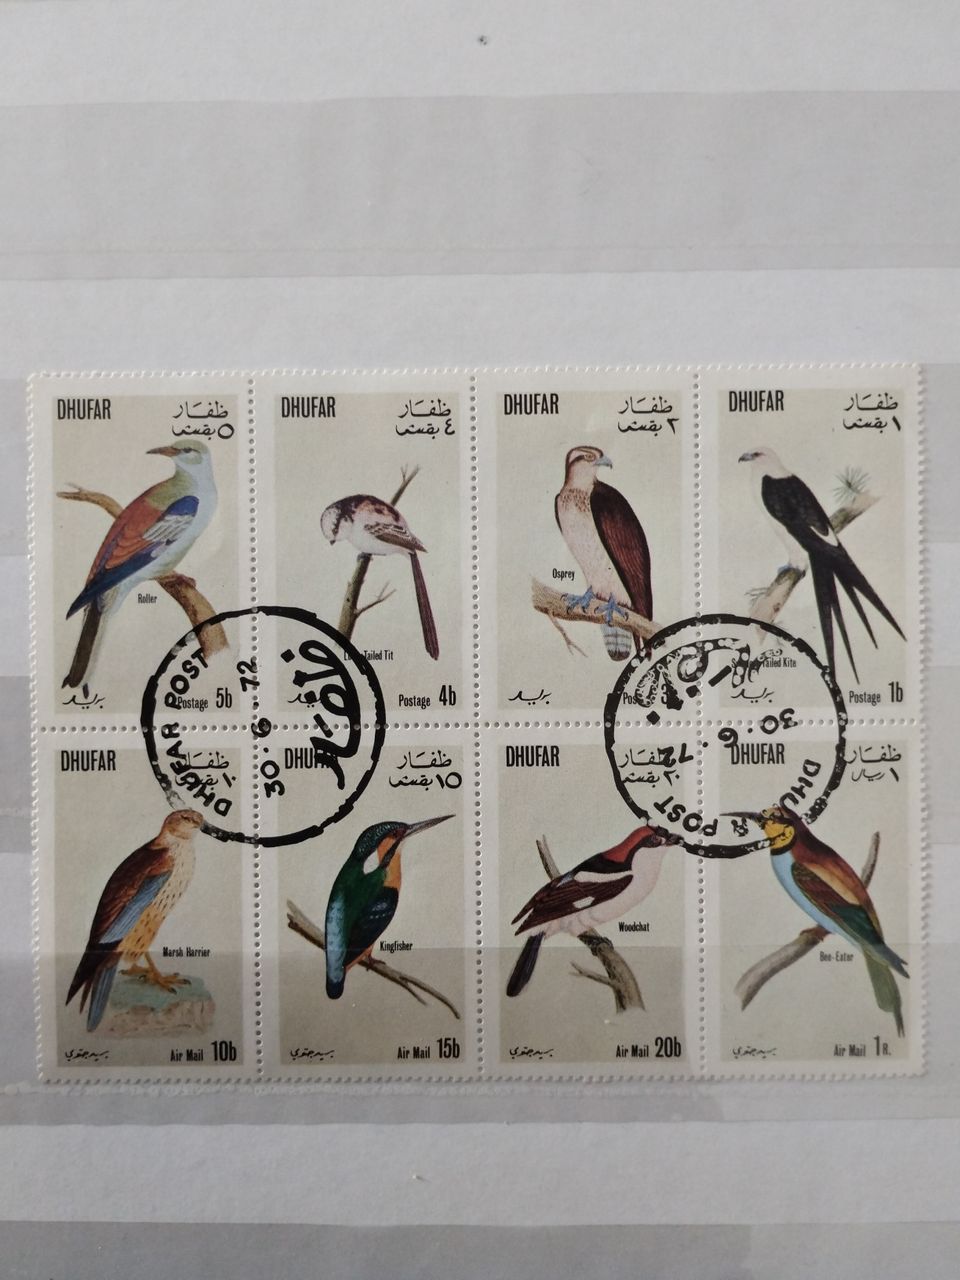 Eläin aiheisia postimerkkejä